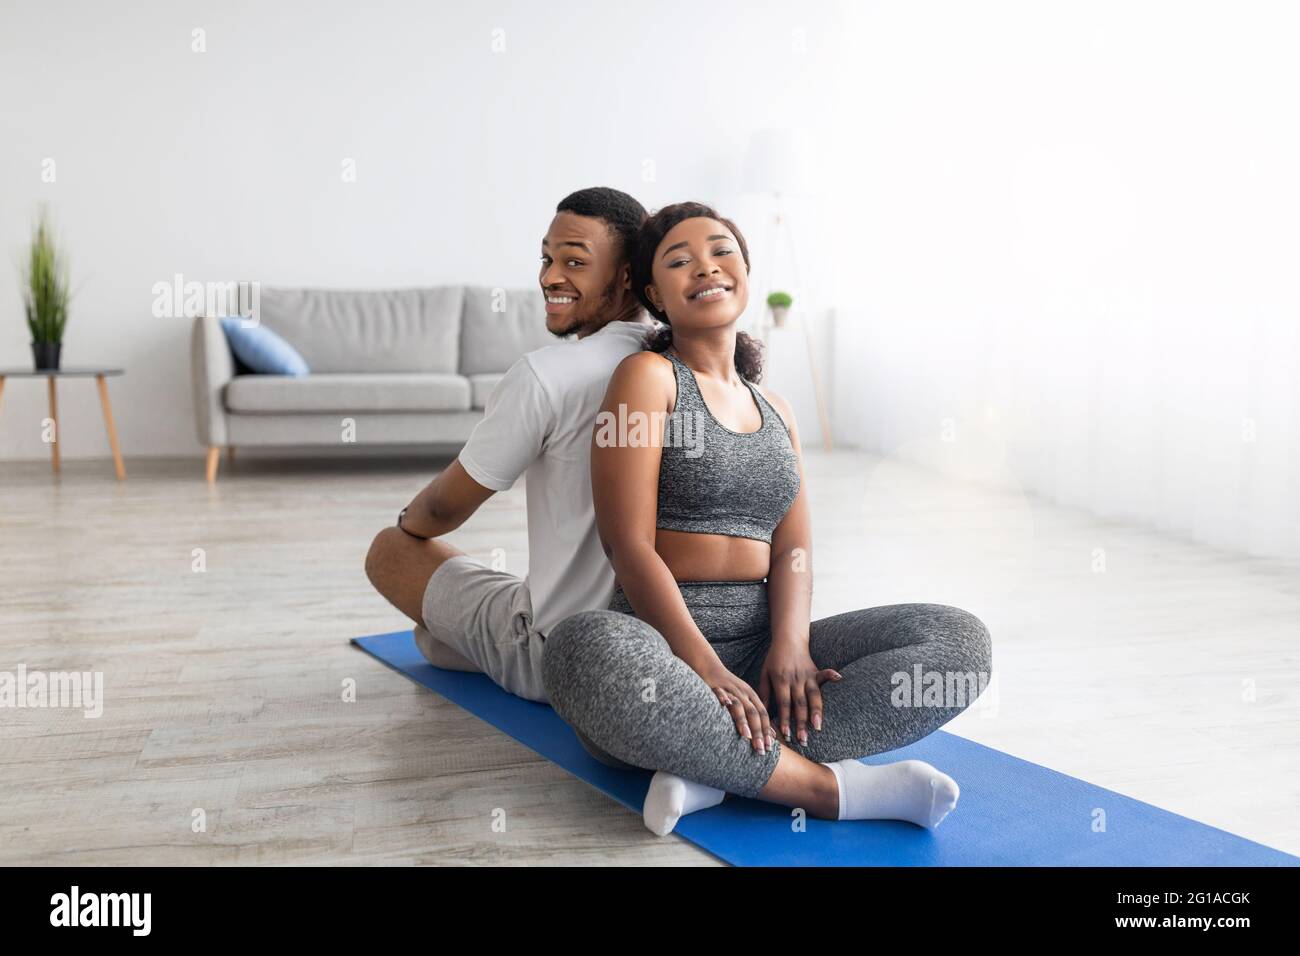 Una coppia afro-americana sorridente che si rilassa dopo una pratica di yoga, seduta sul tappetino fitness di nuovo in dietro, sorridendo alla macchina fotografica Foto Stock